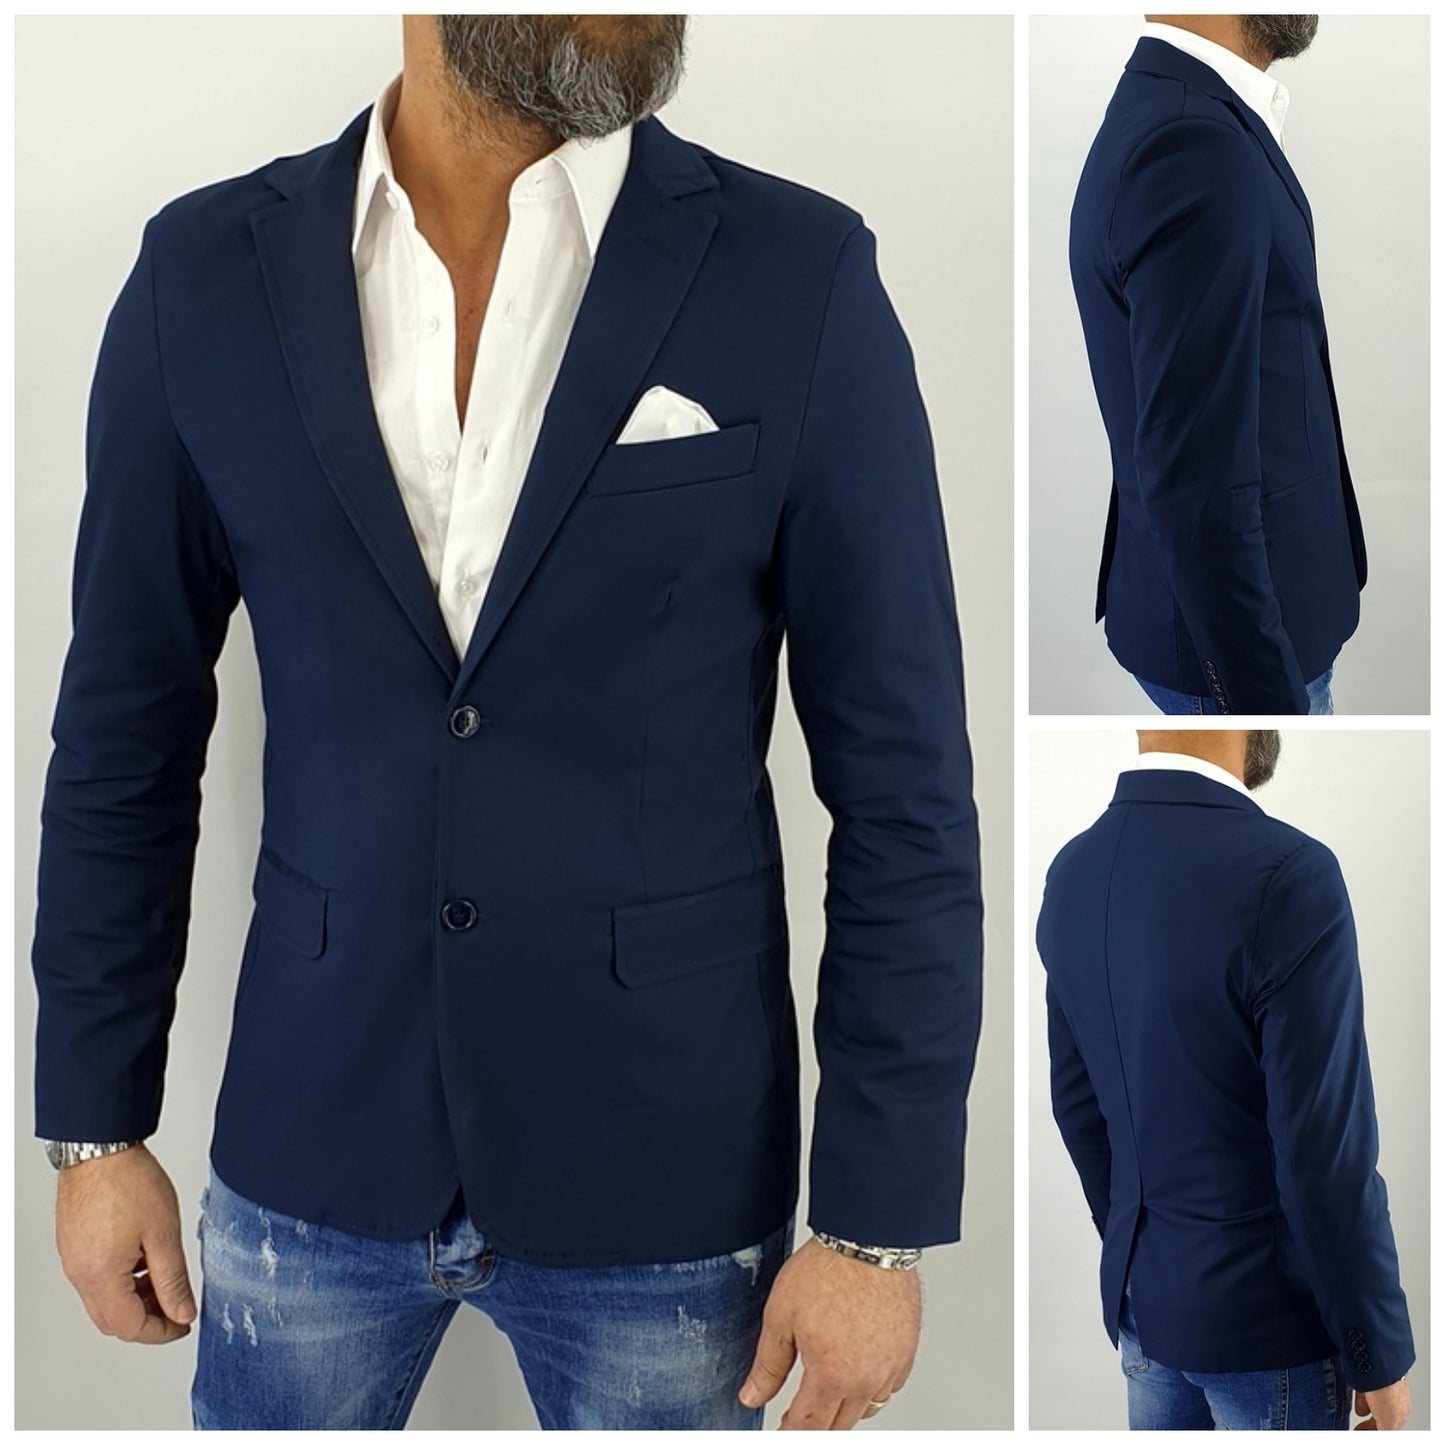 giacca uomo 2 bottoni blu cotone elastico pochette richiudibile s,m,l,xl,xxl